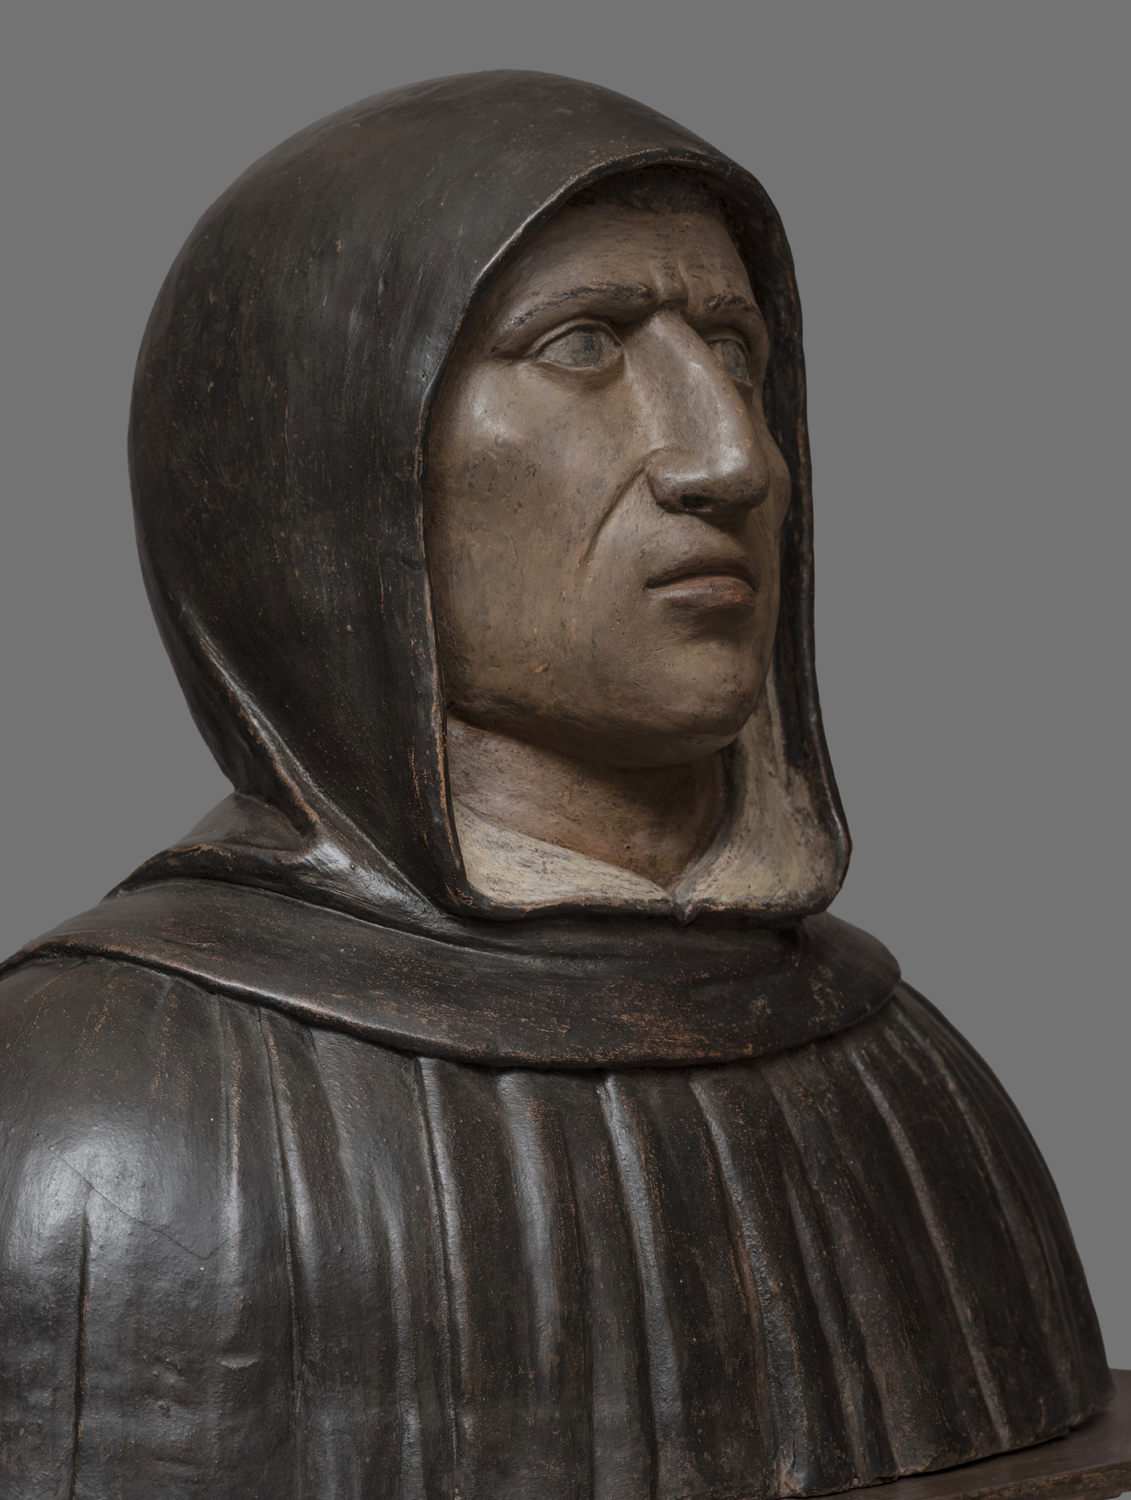 Il busto di Gerolamo Savonarola, attribuito a Marco della Robbia, esposto nel Museo di San Marco a FirenzeIl busto di Gerolamo Savonarola, attribuito a Marco della Robbia, esposto nel Museo di San Marco a Firenze